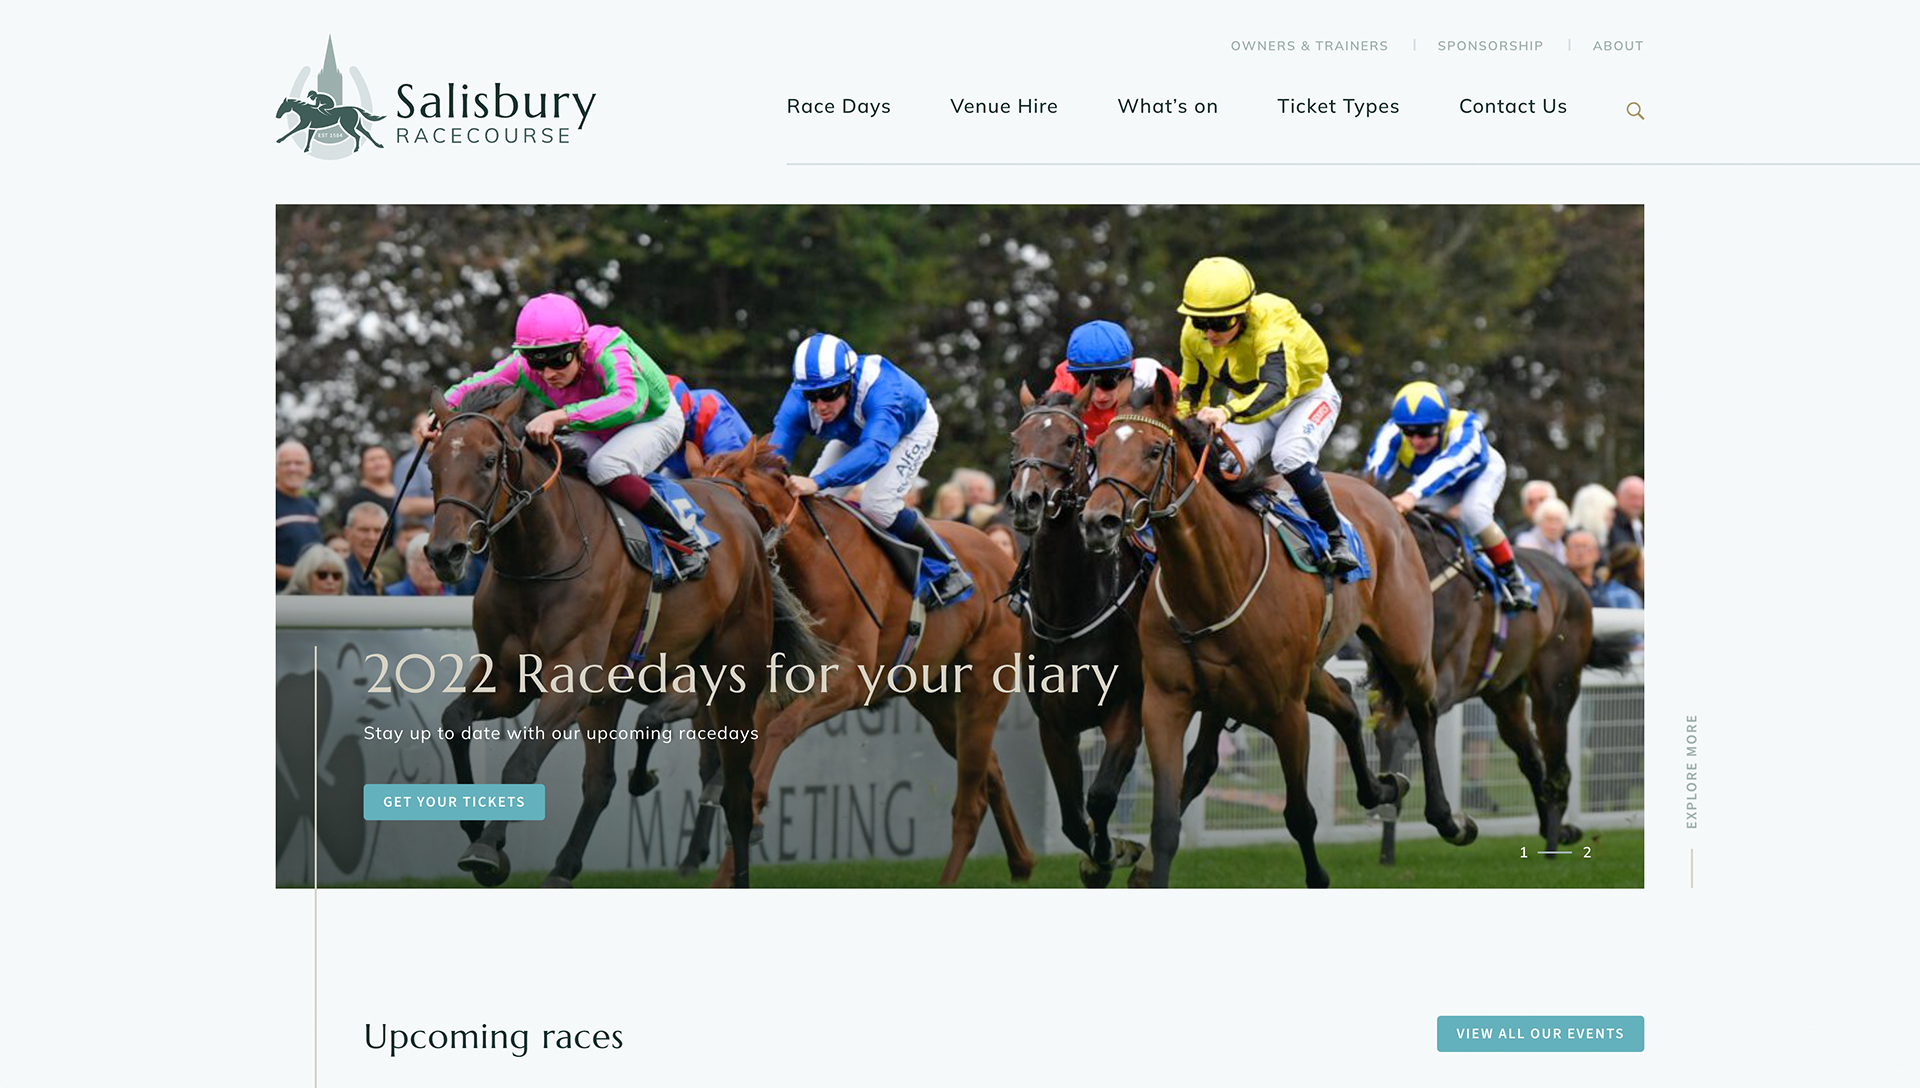 Salisbury Racecourse website design